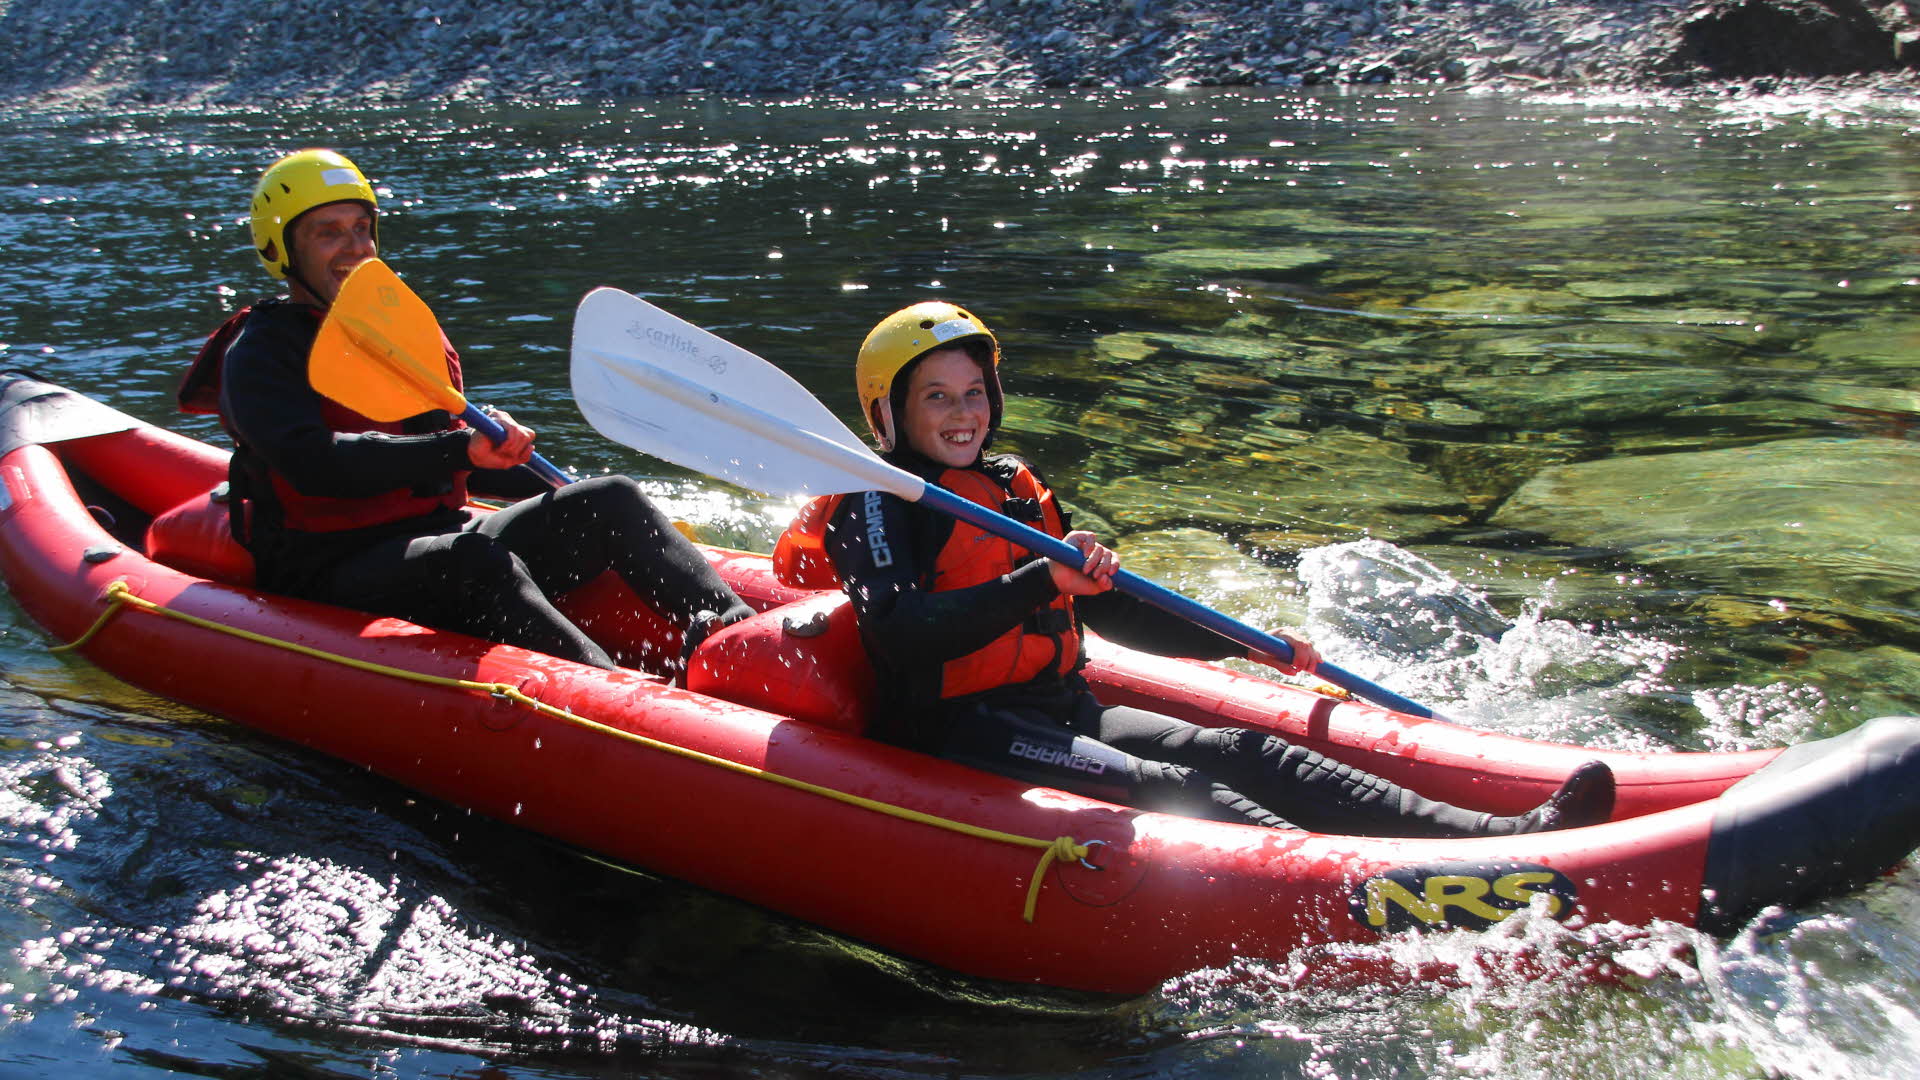 Deux garçons sourient dans un raft rouge sur une rivière à l’eau transparente. Ils tiennent des pagaies et portent des gilets de sauvetage, des casques et des combinaisons.